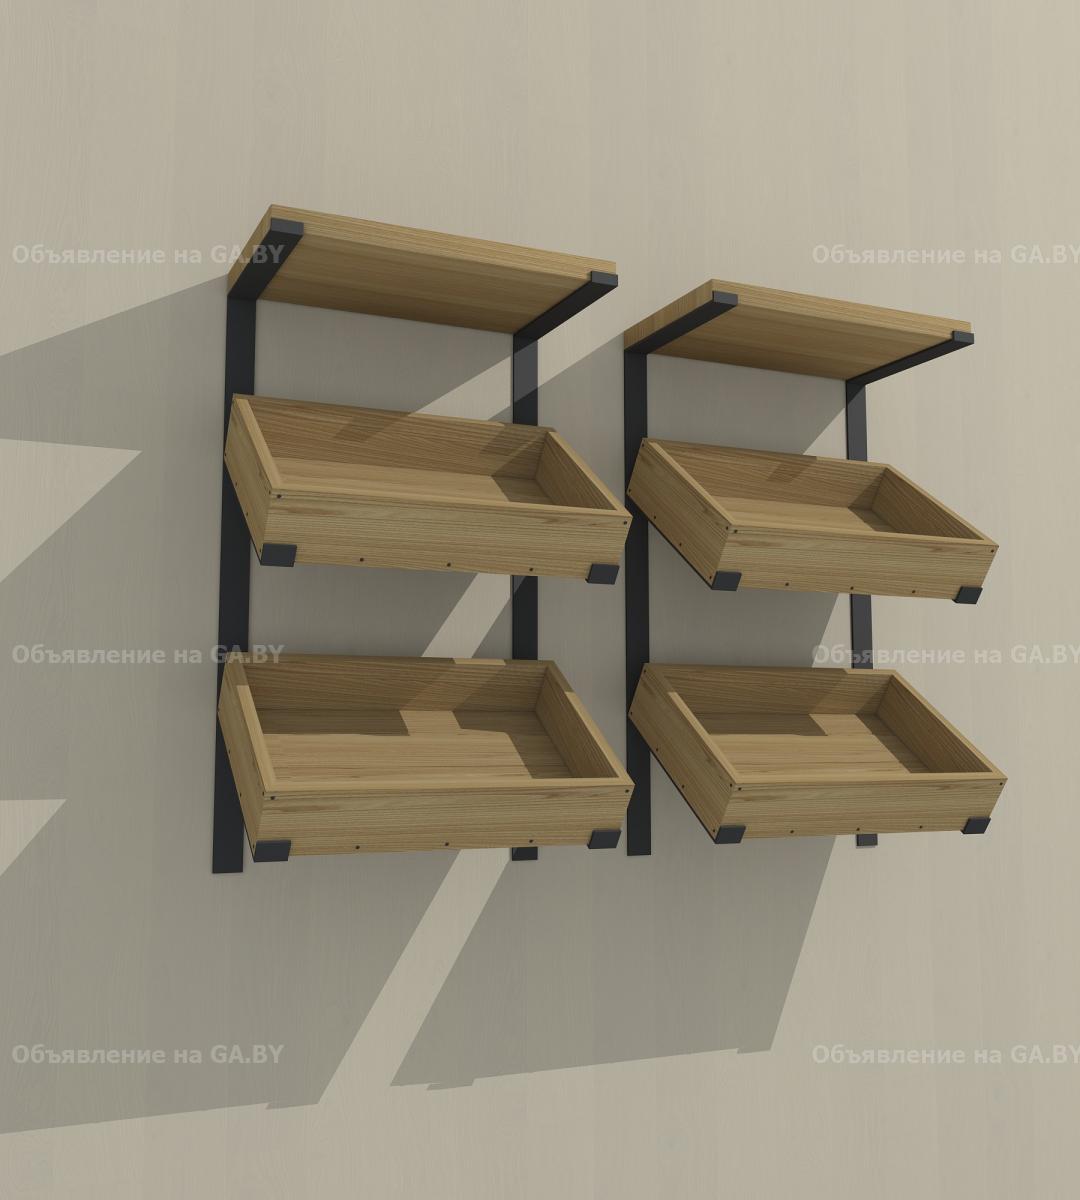 Продам Изготовление индивидуальной мебели из металла и дерева - GA.BY